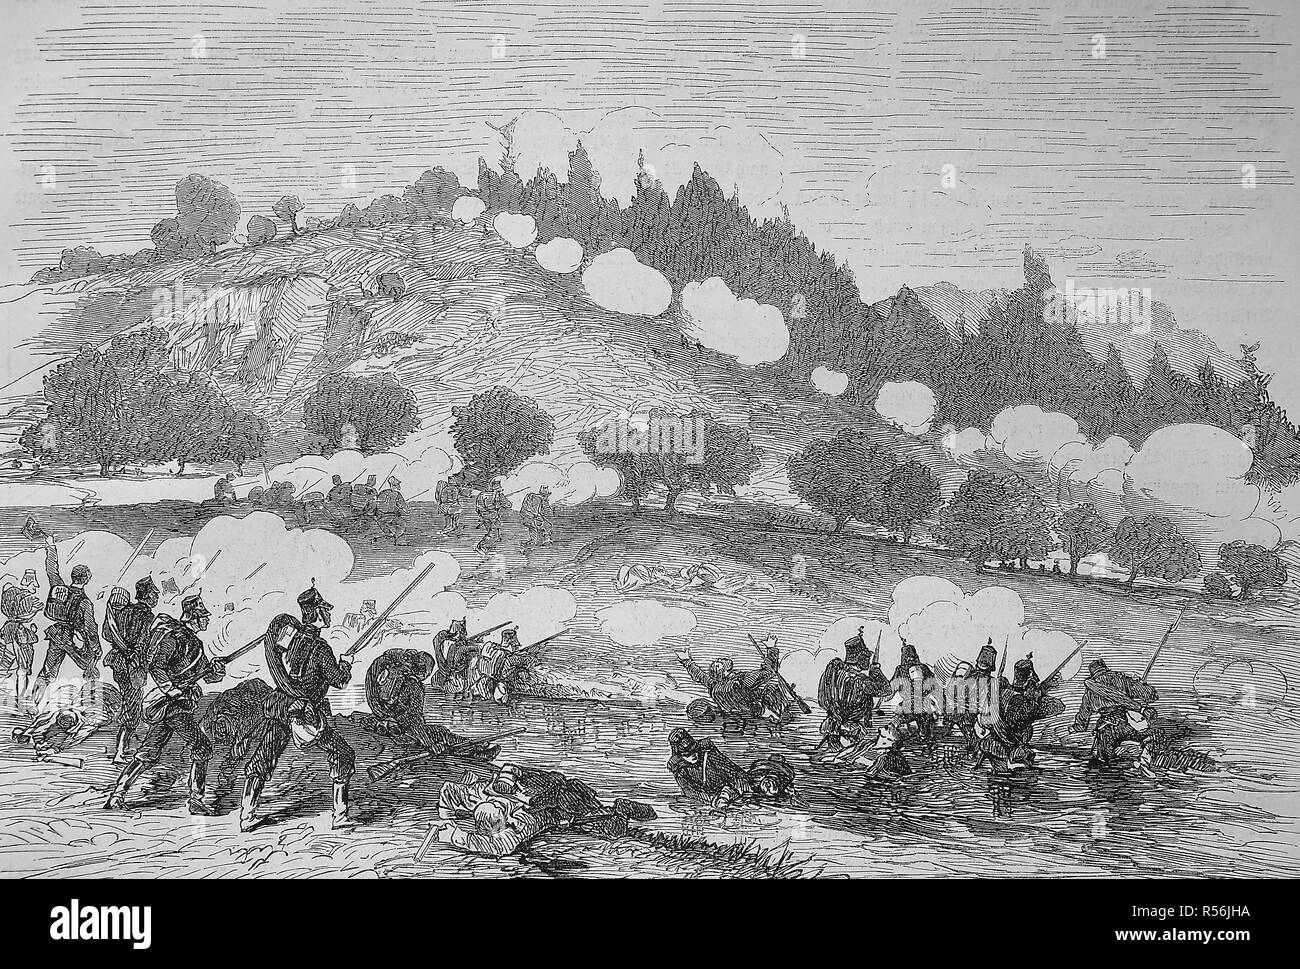 Xi Nord tedesco figther battaglione nei pressi di Wörth, guerra franco-prussiana o guerra franco-tedesca 1870/1871, xilografia, Francia Foto Stock